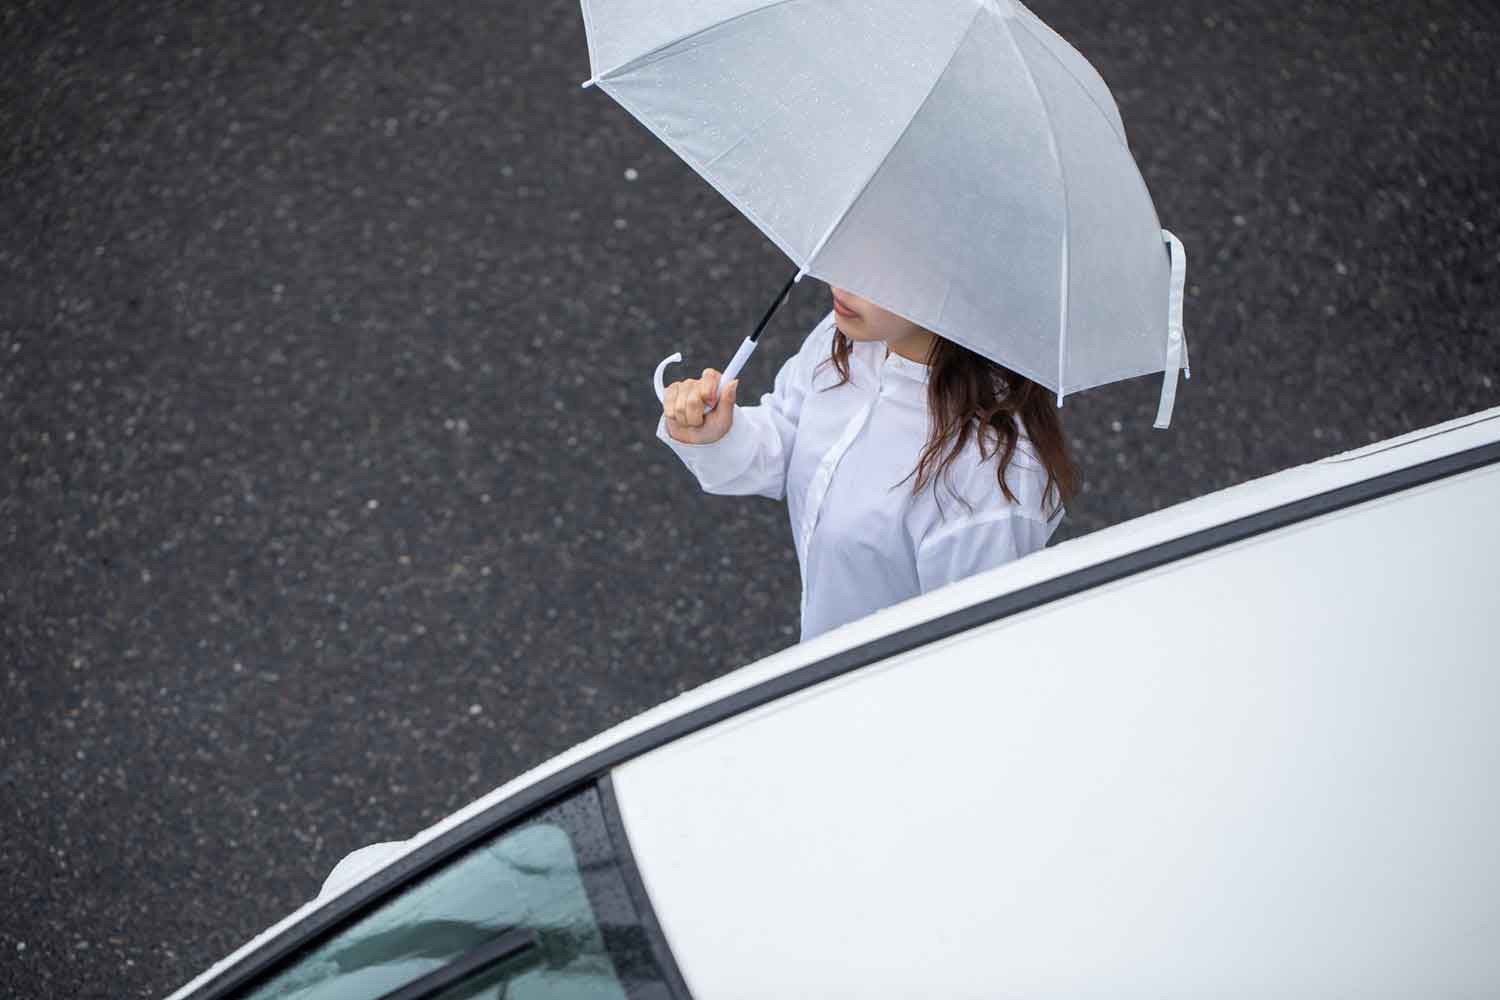 傘を持った女性がクルマ沿いに歩行している様子